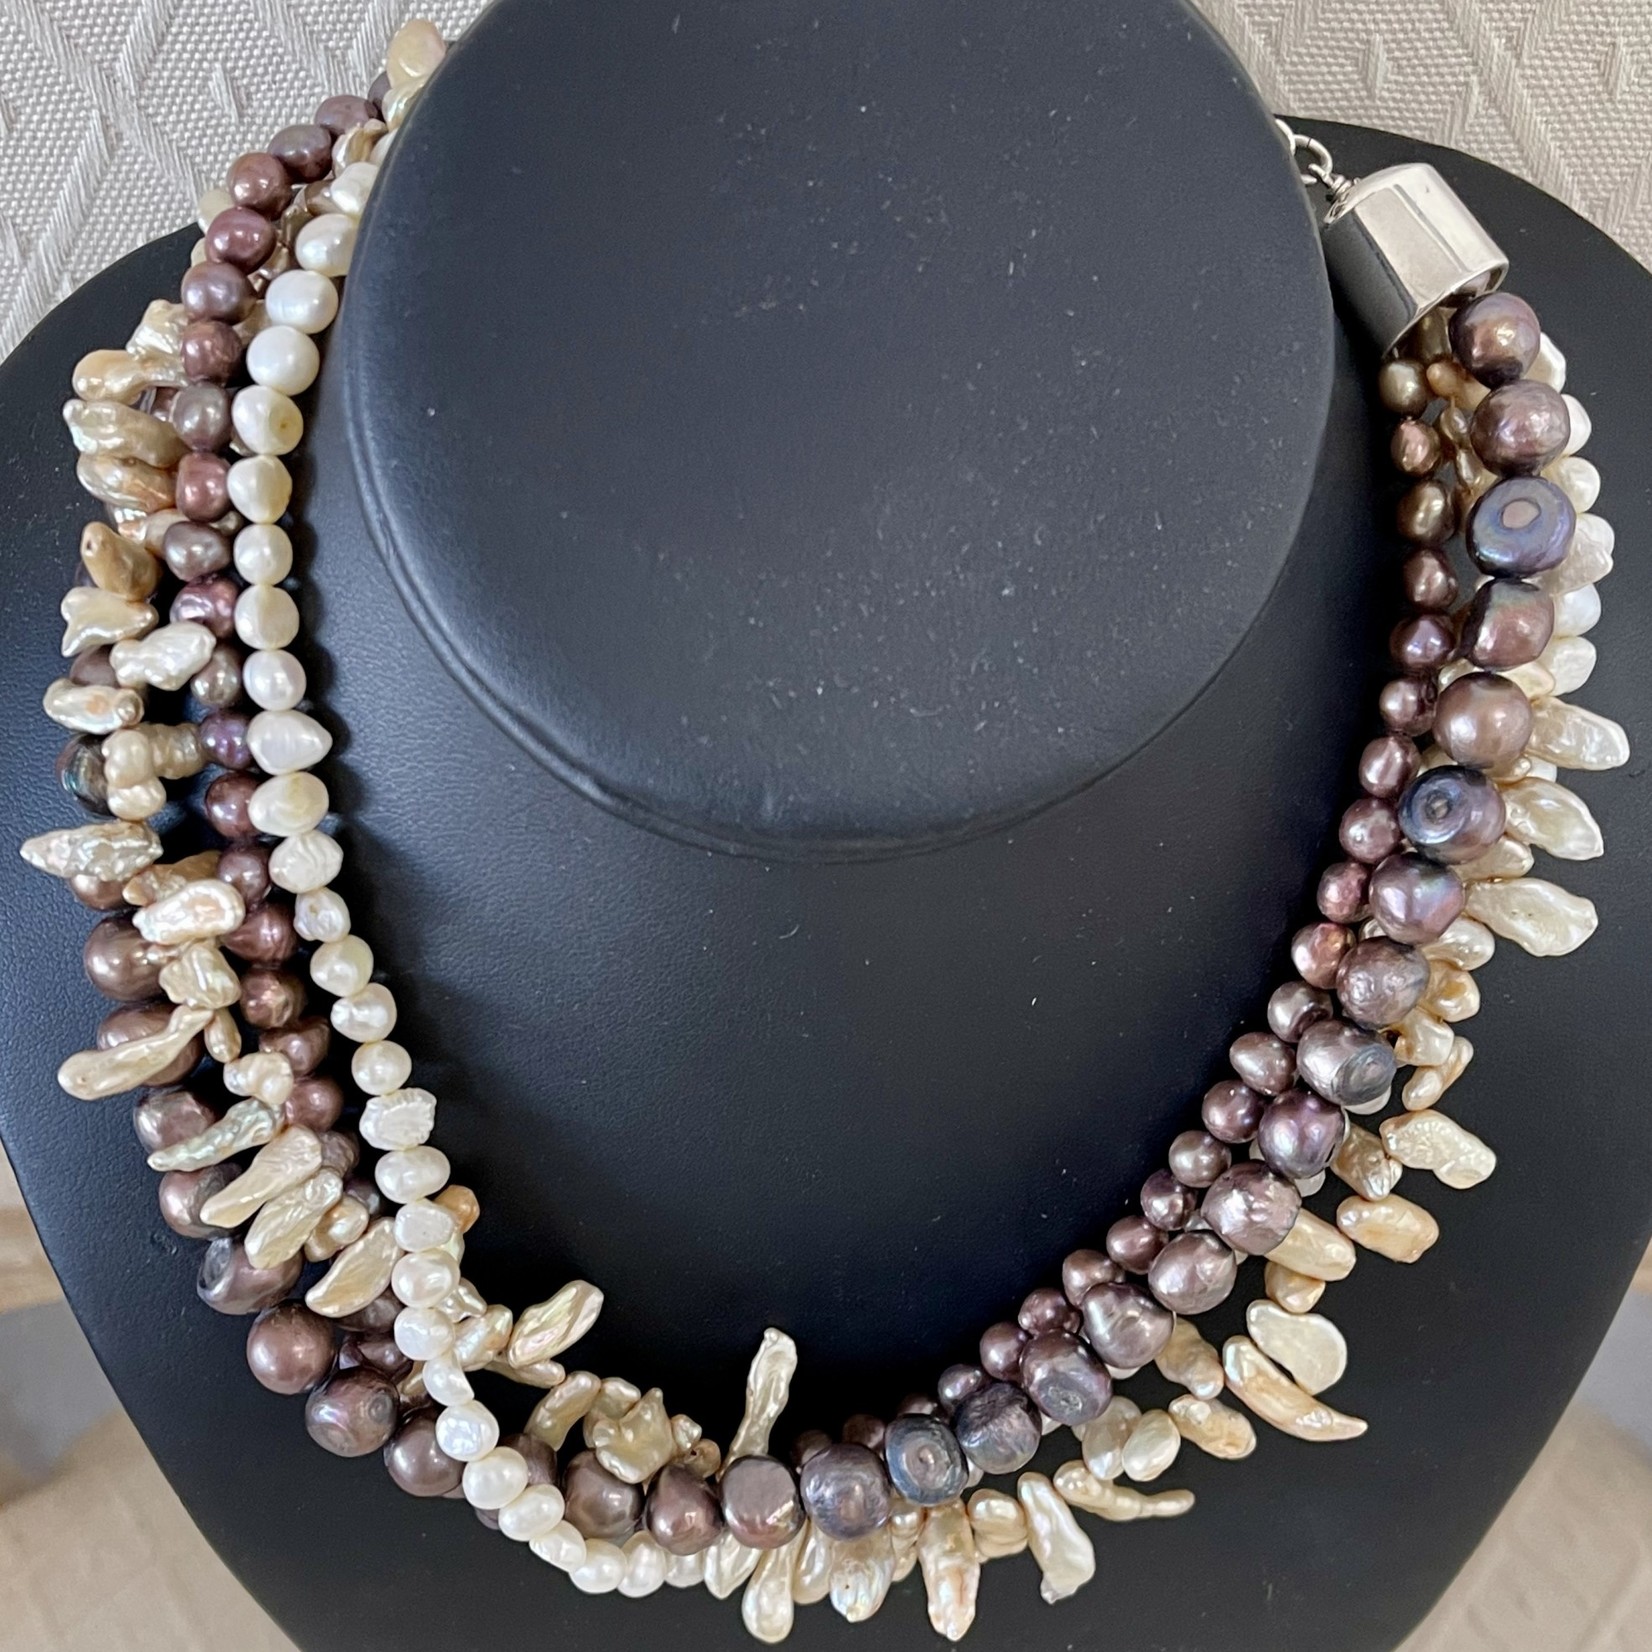 Rare Finds NECKLACE, Biwa pearls, potato pearls, 4 strand, 16" RARE